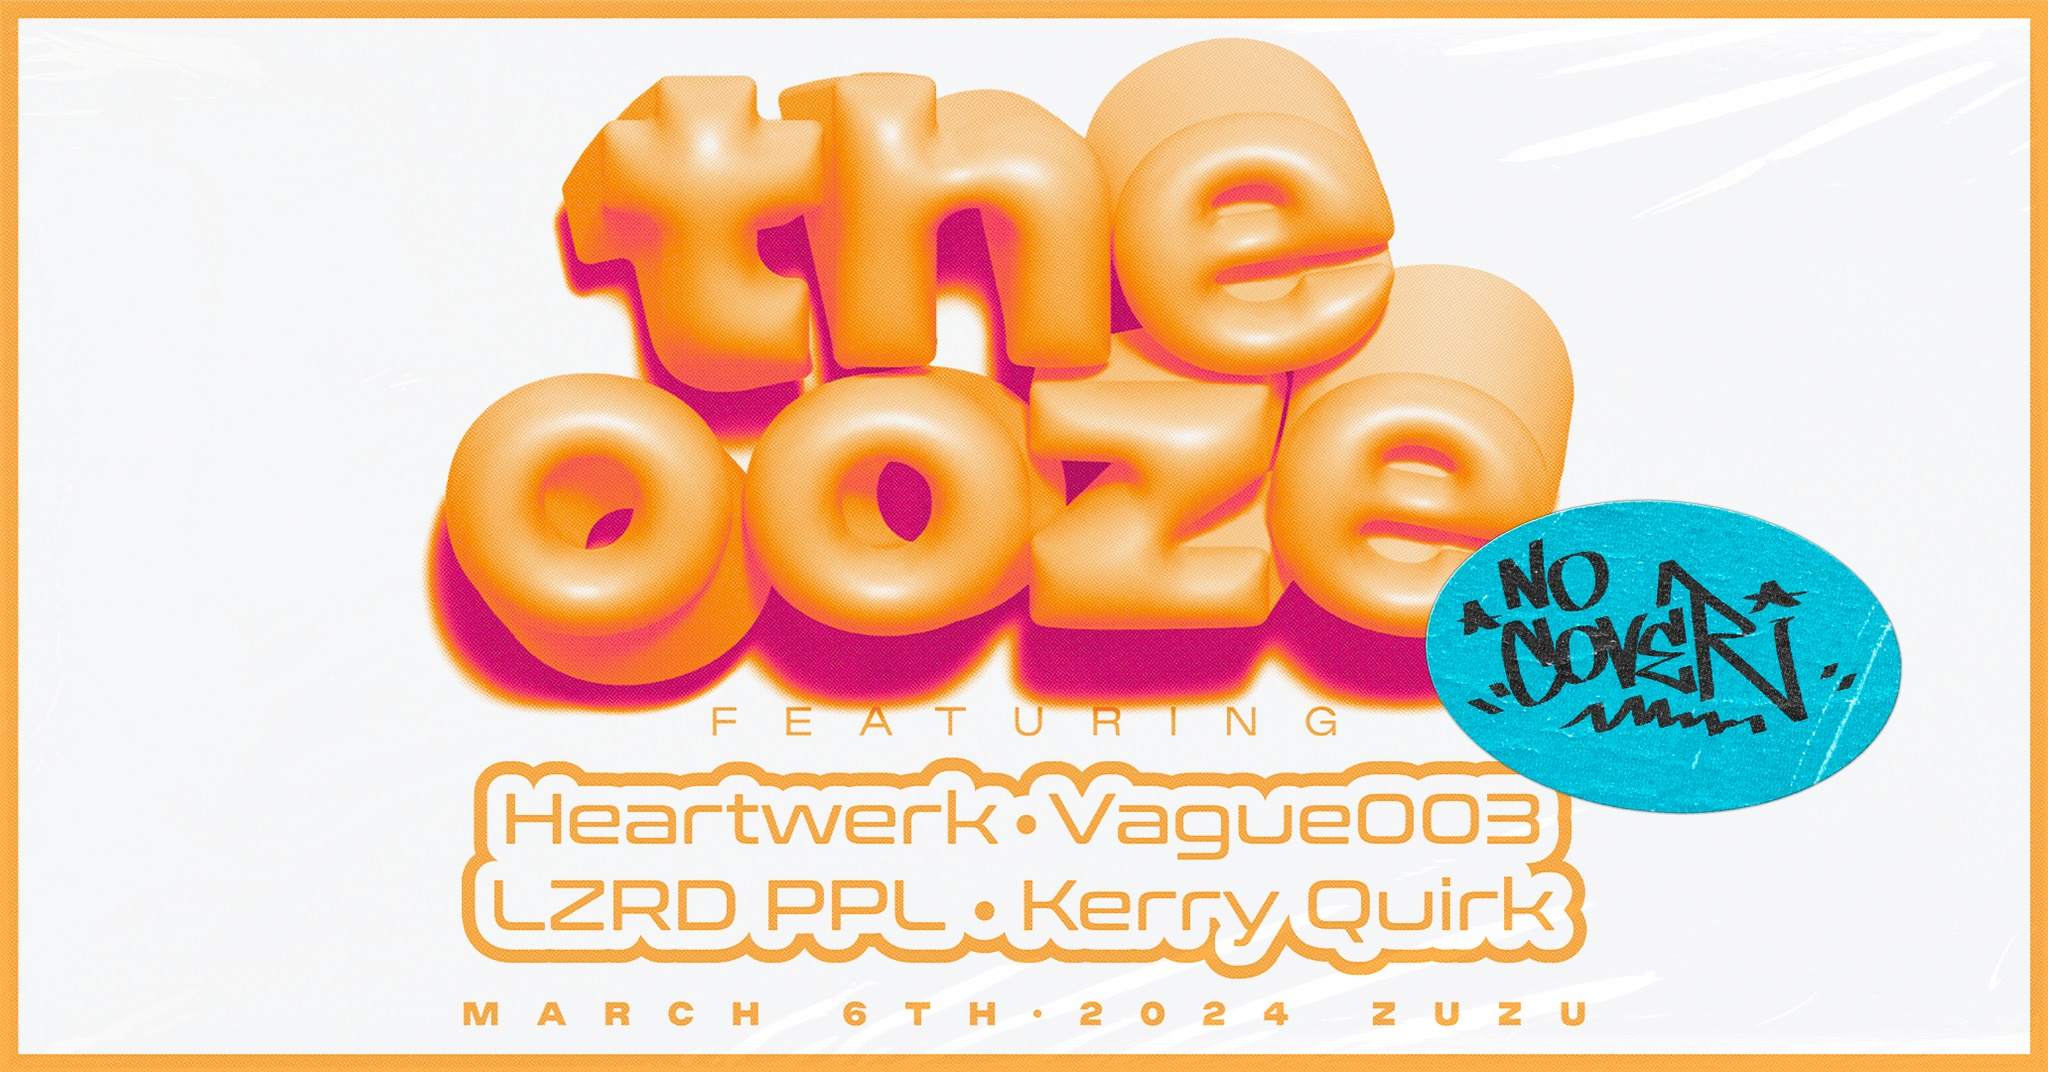 The OOZE feat. HeartWerk, Vauge003 & LZRD PPL - フライヤー表